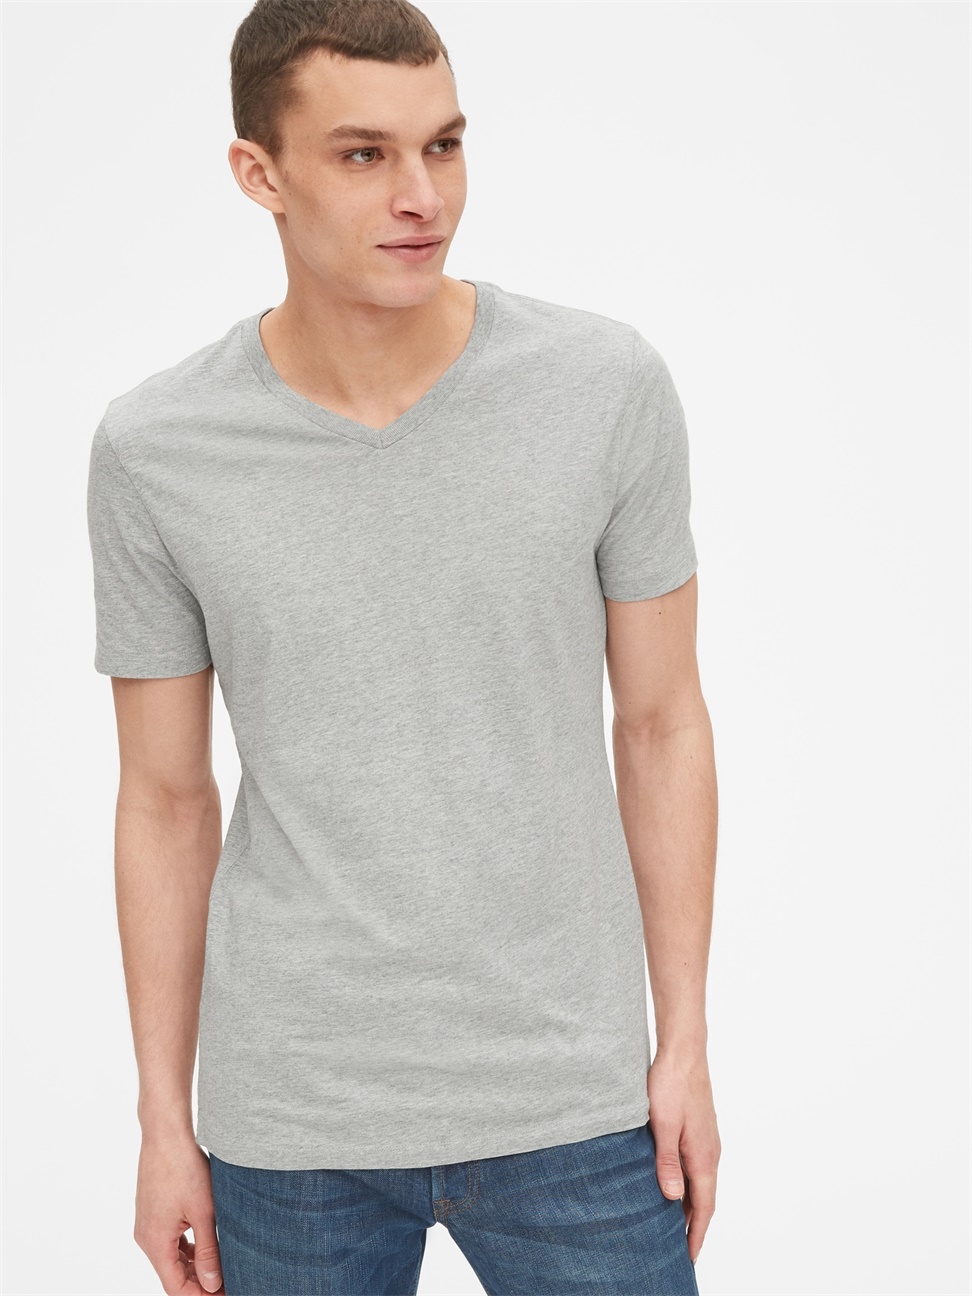 男裝|棉質舒適V領短袖T恤-淺麻灰色